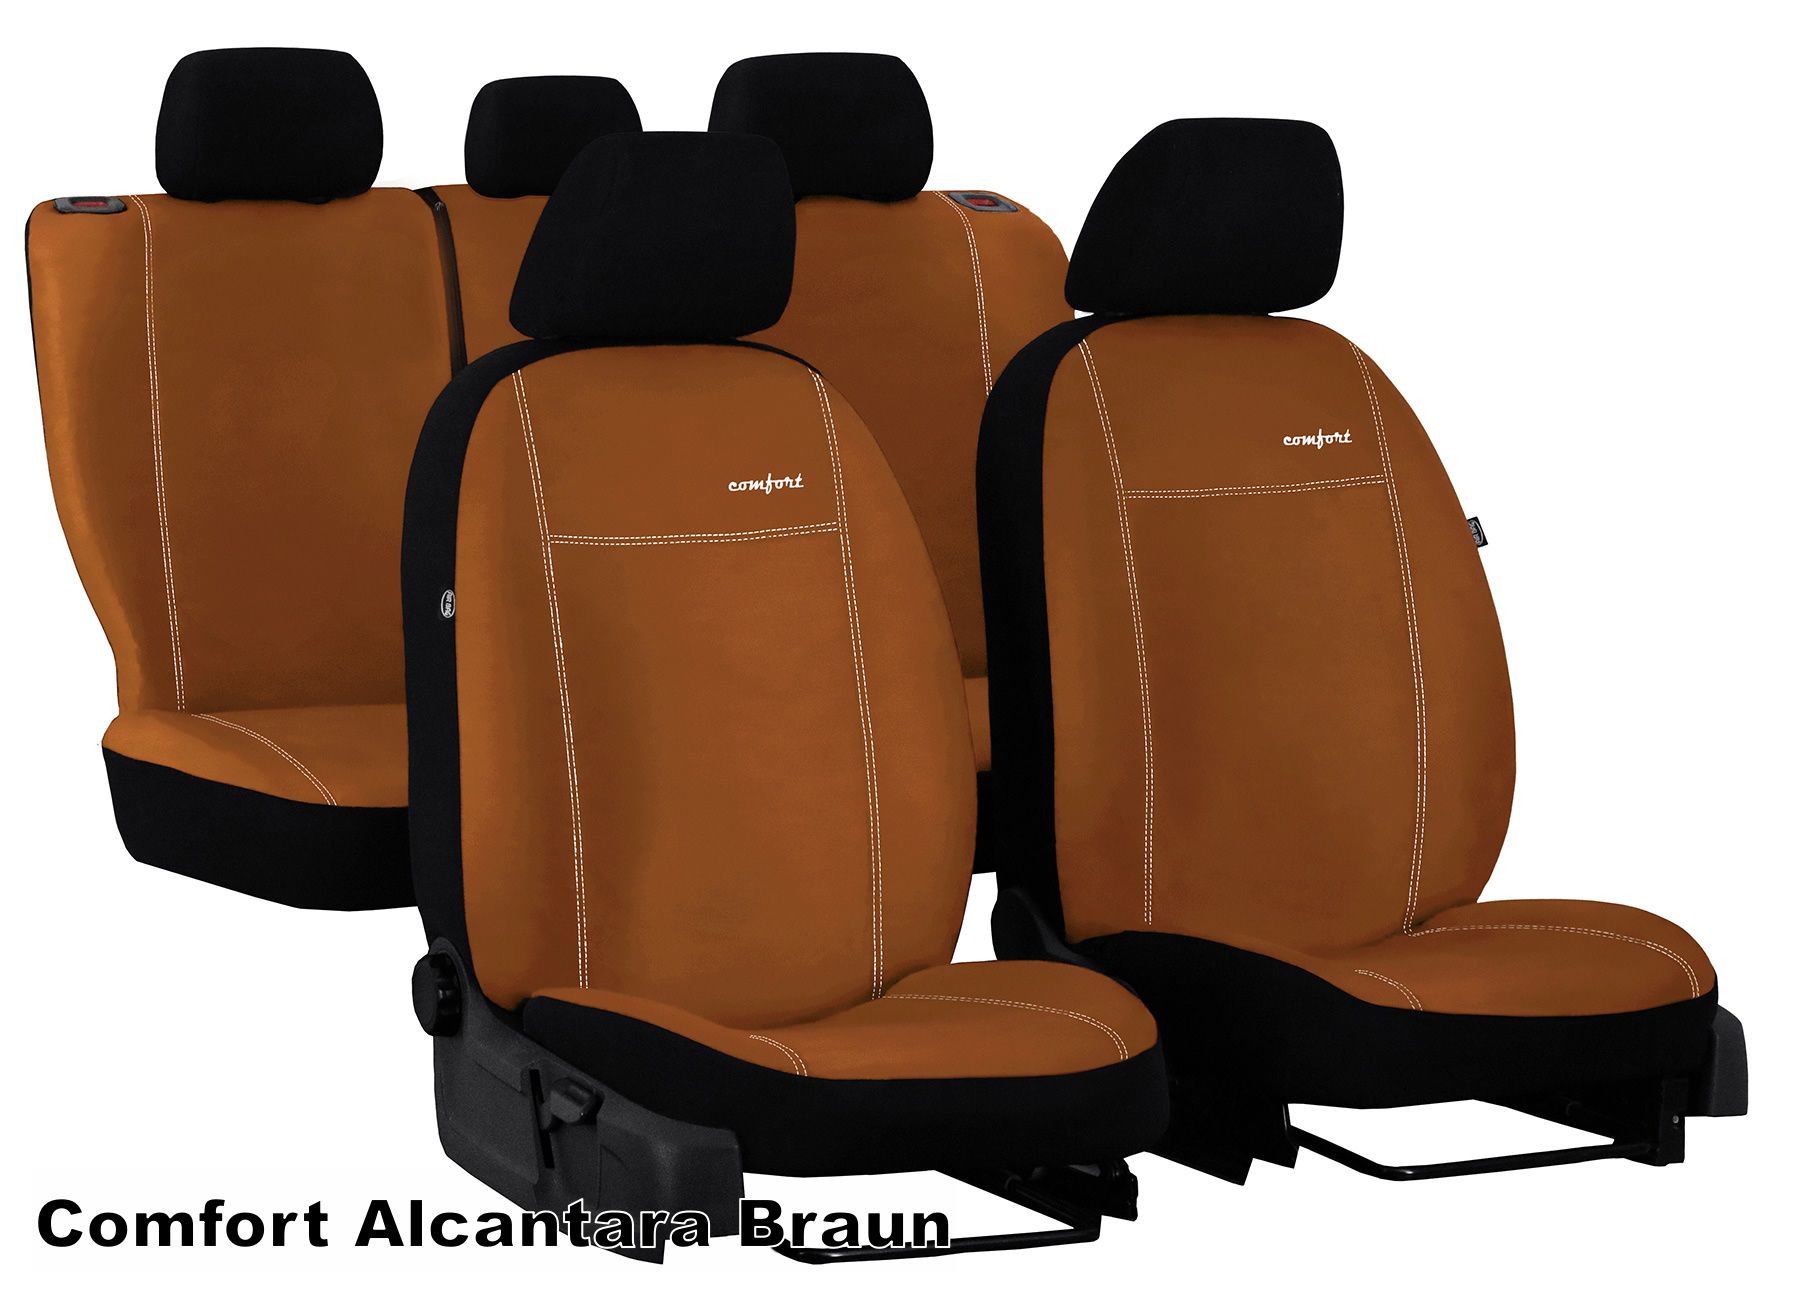 Maß Schonbezüge Sitzbezüge für Dacia Duster N3